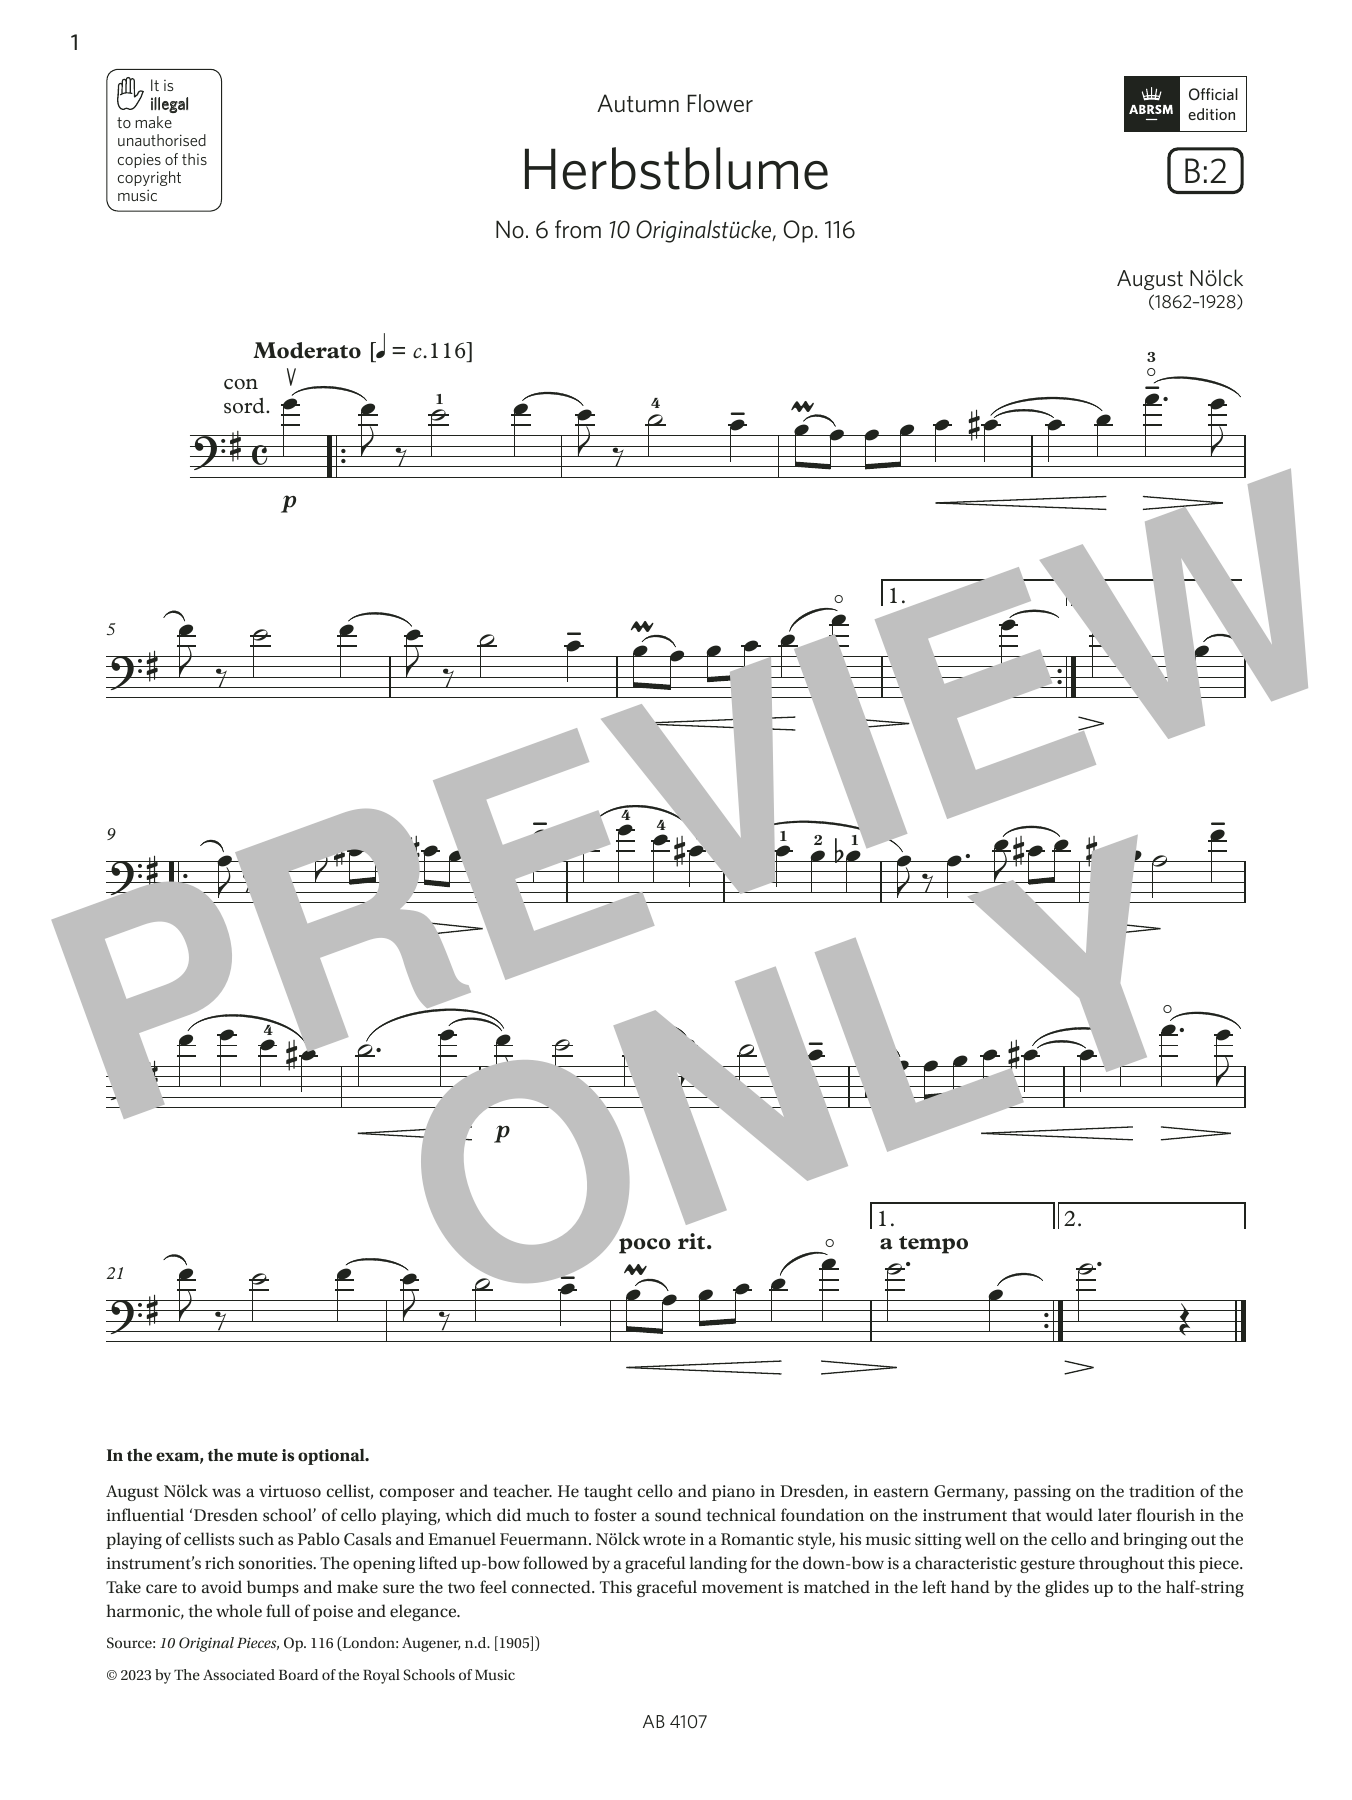 Download August Nölck Herbstblume (Grade 4, B2, from the ABRS Sheet Music